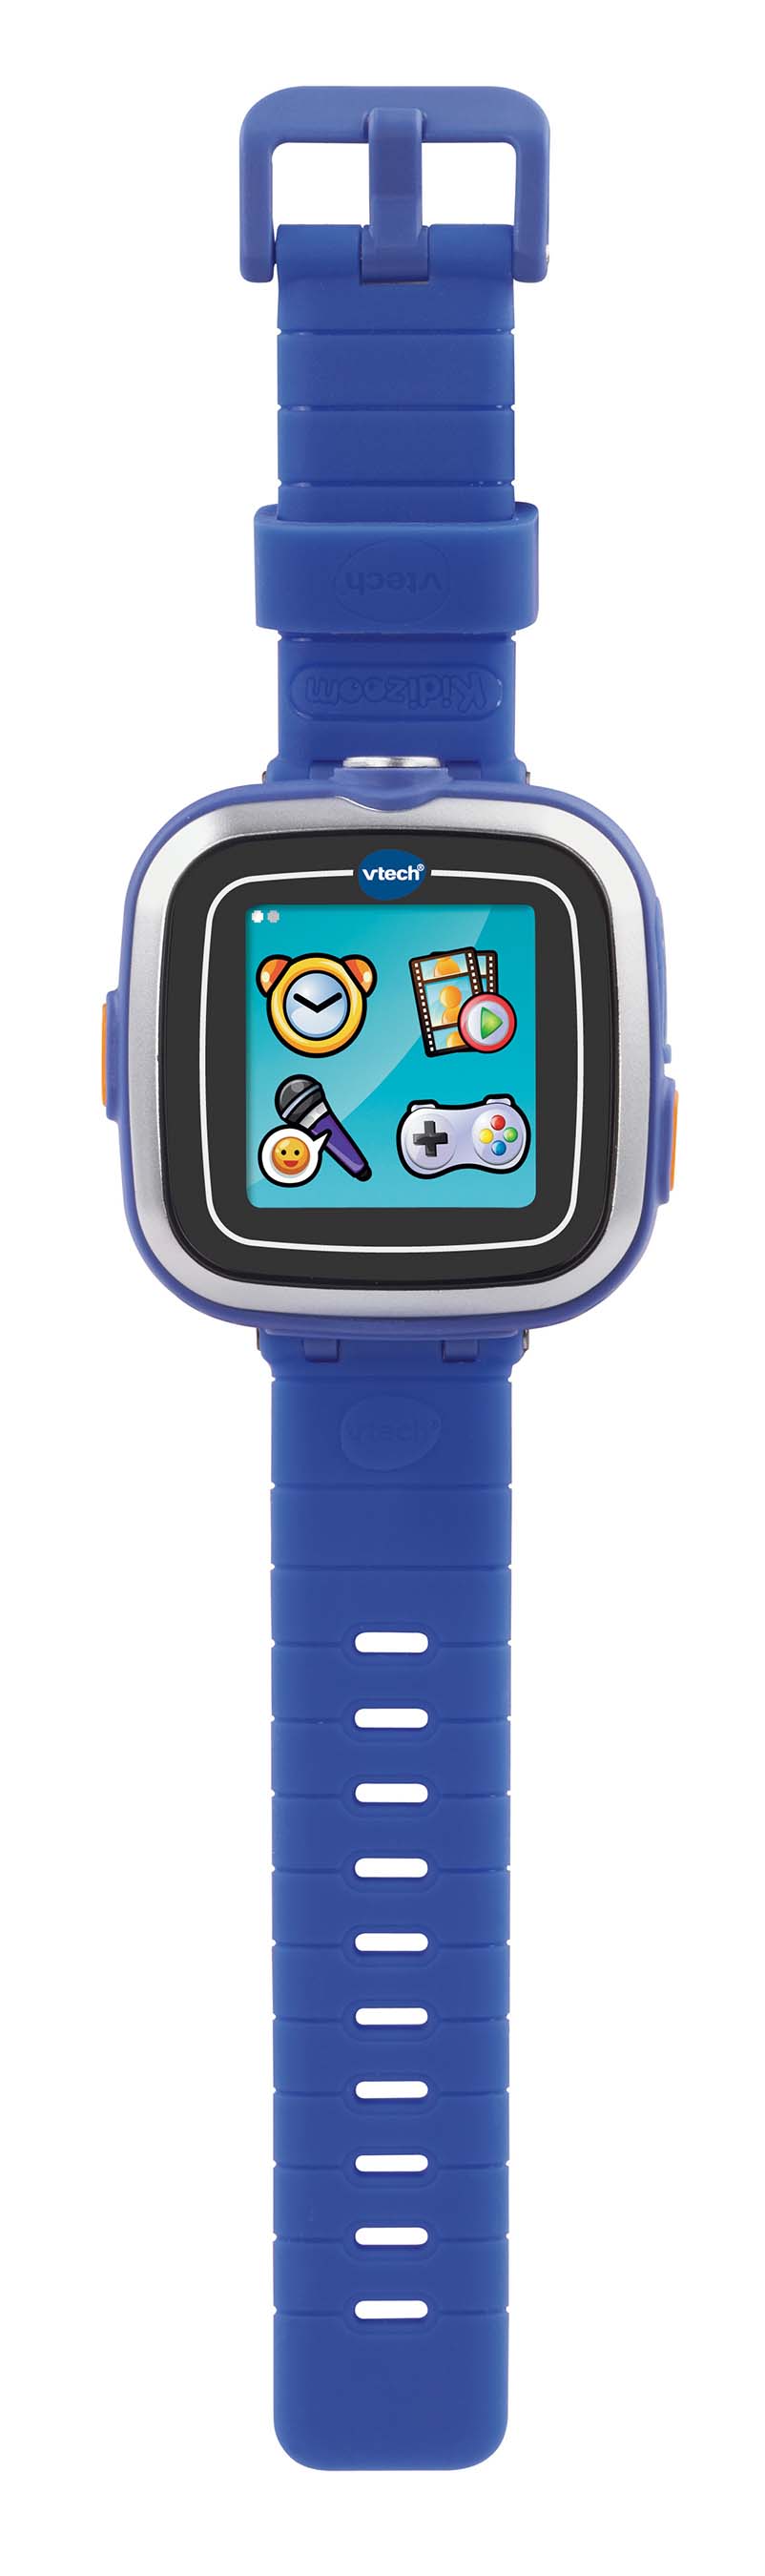 vtech smartwatch toys r us